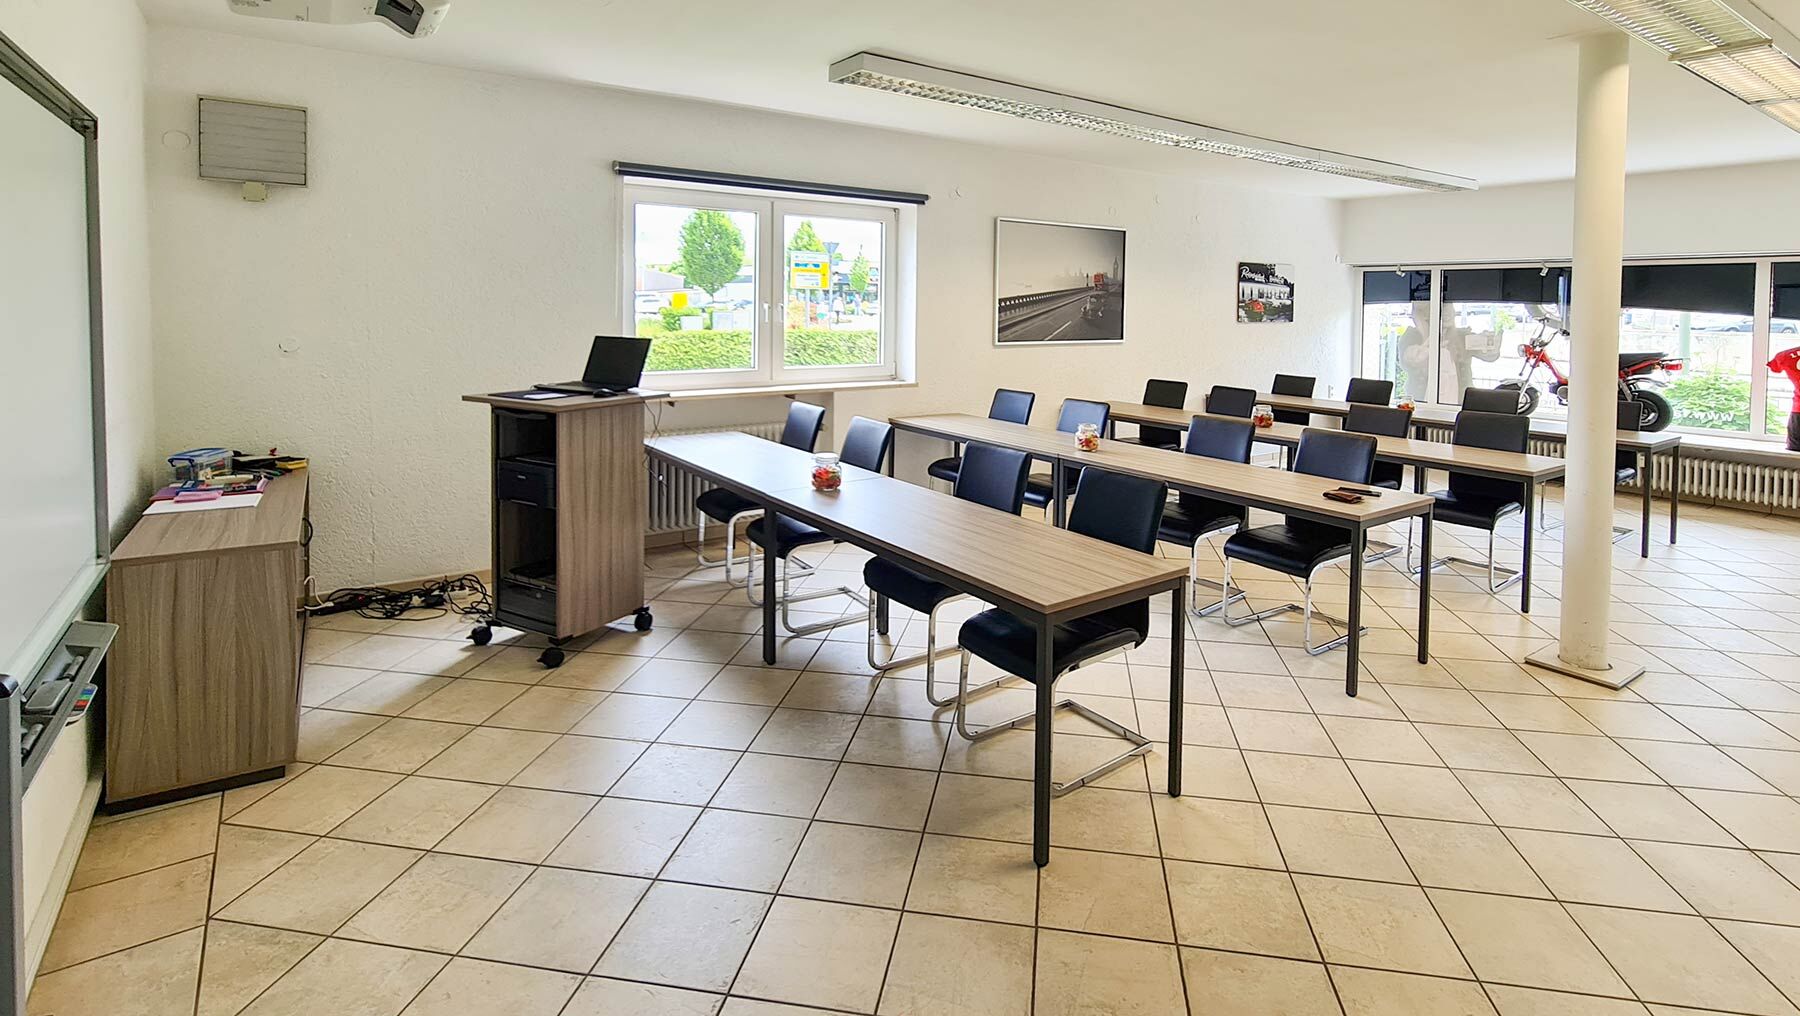 Schulungsraum in Passau mit Tischreihen und bequemen Stühlen